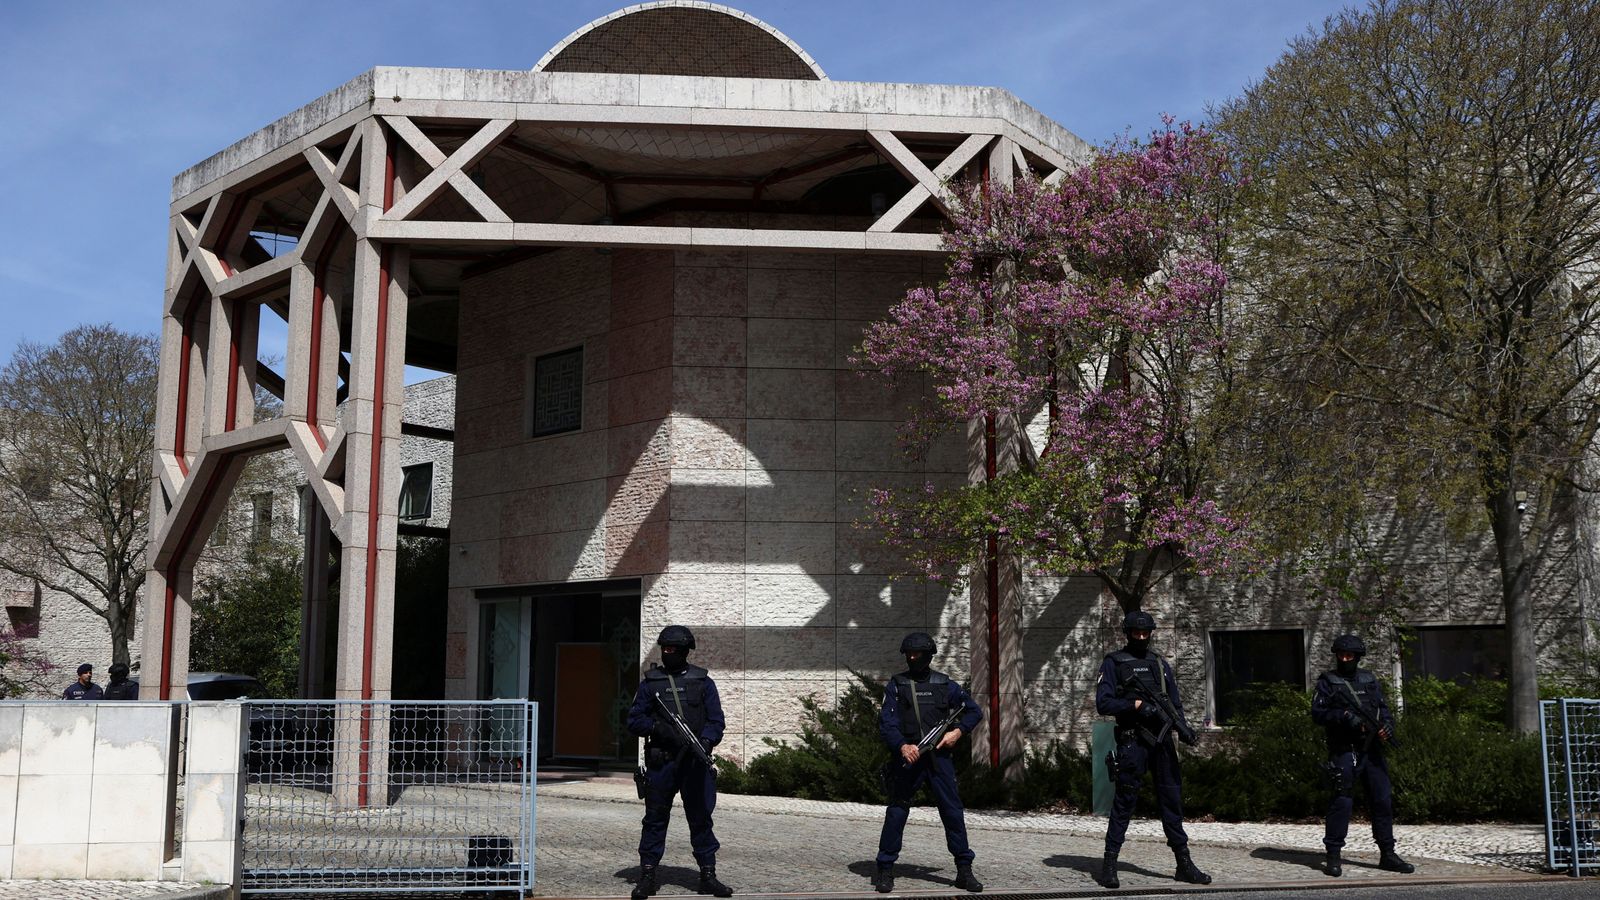 Deux femmes poignardées à mort au Centre islamique ismaili de Lisbonne |  nouvelles du monde